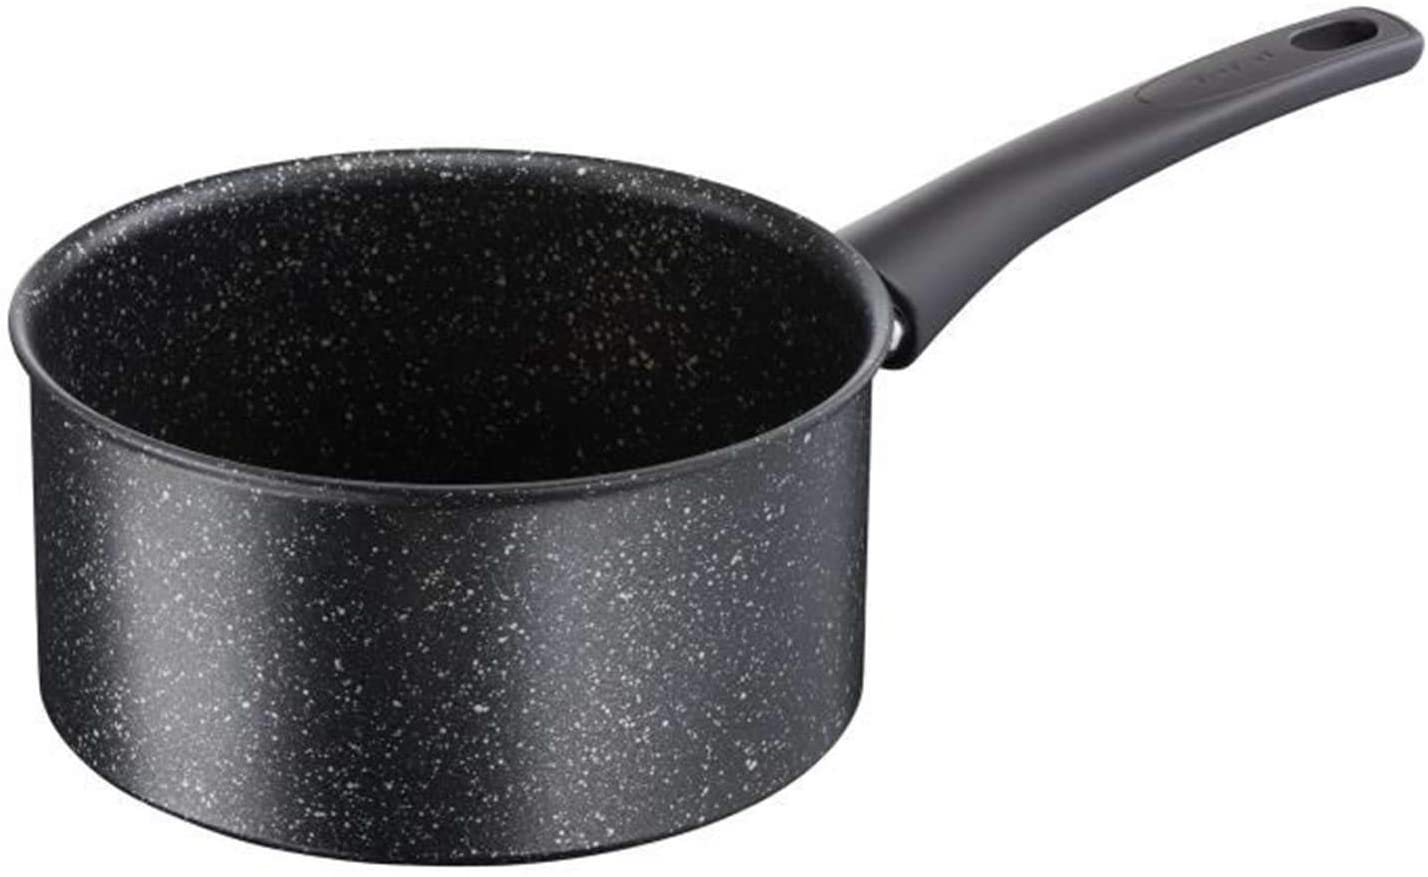 Tefal C6342802 Authentic Speckled Induction Sauce Pan, Aluminium, black, 16 cm